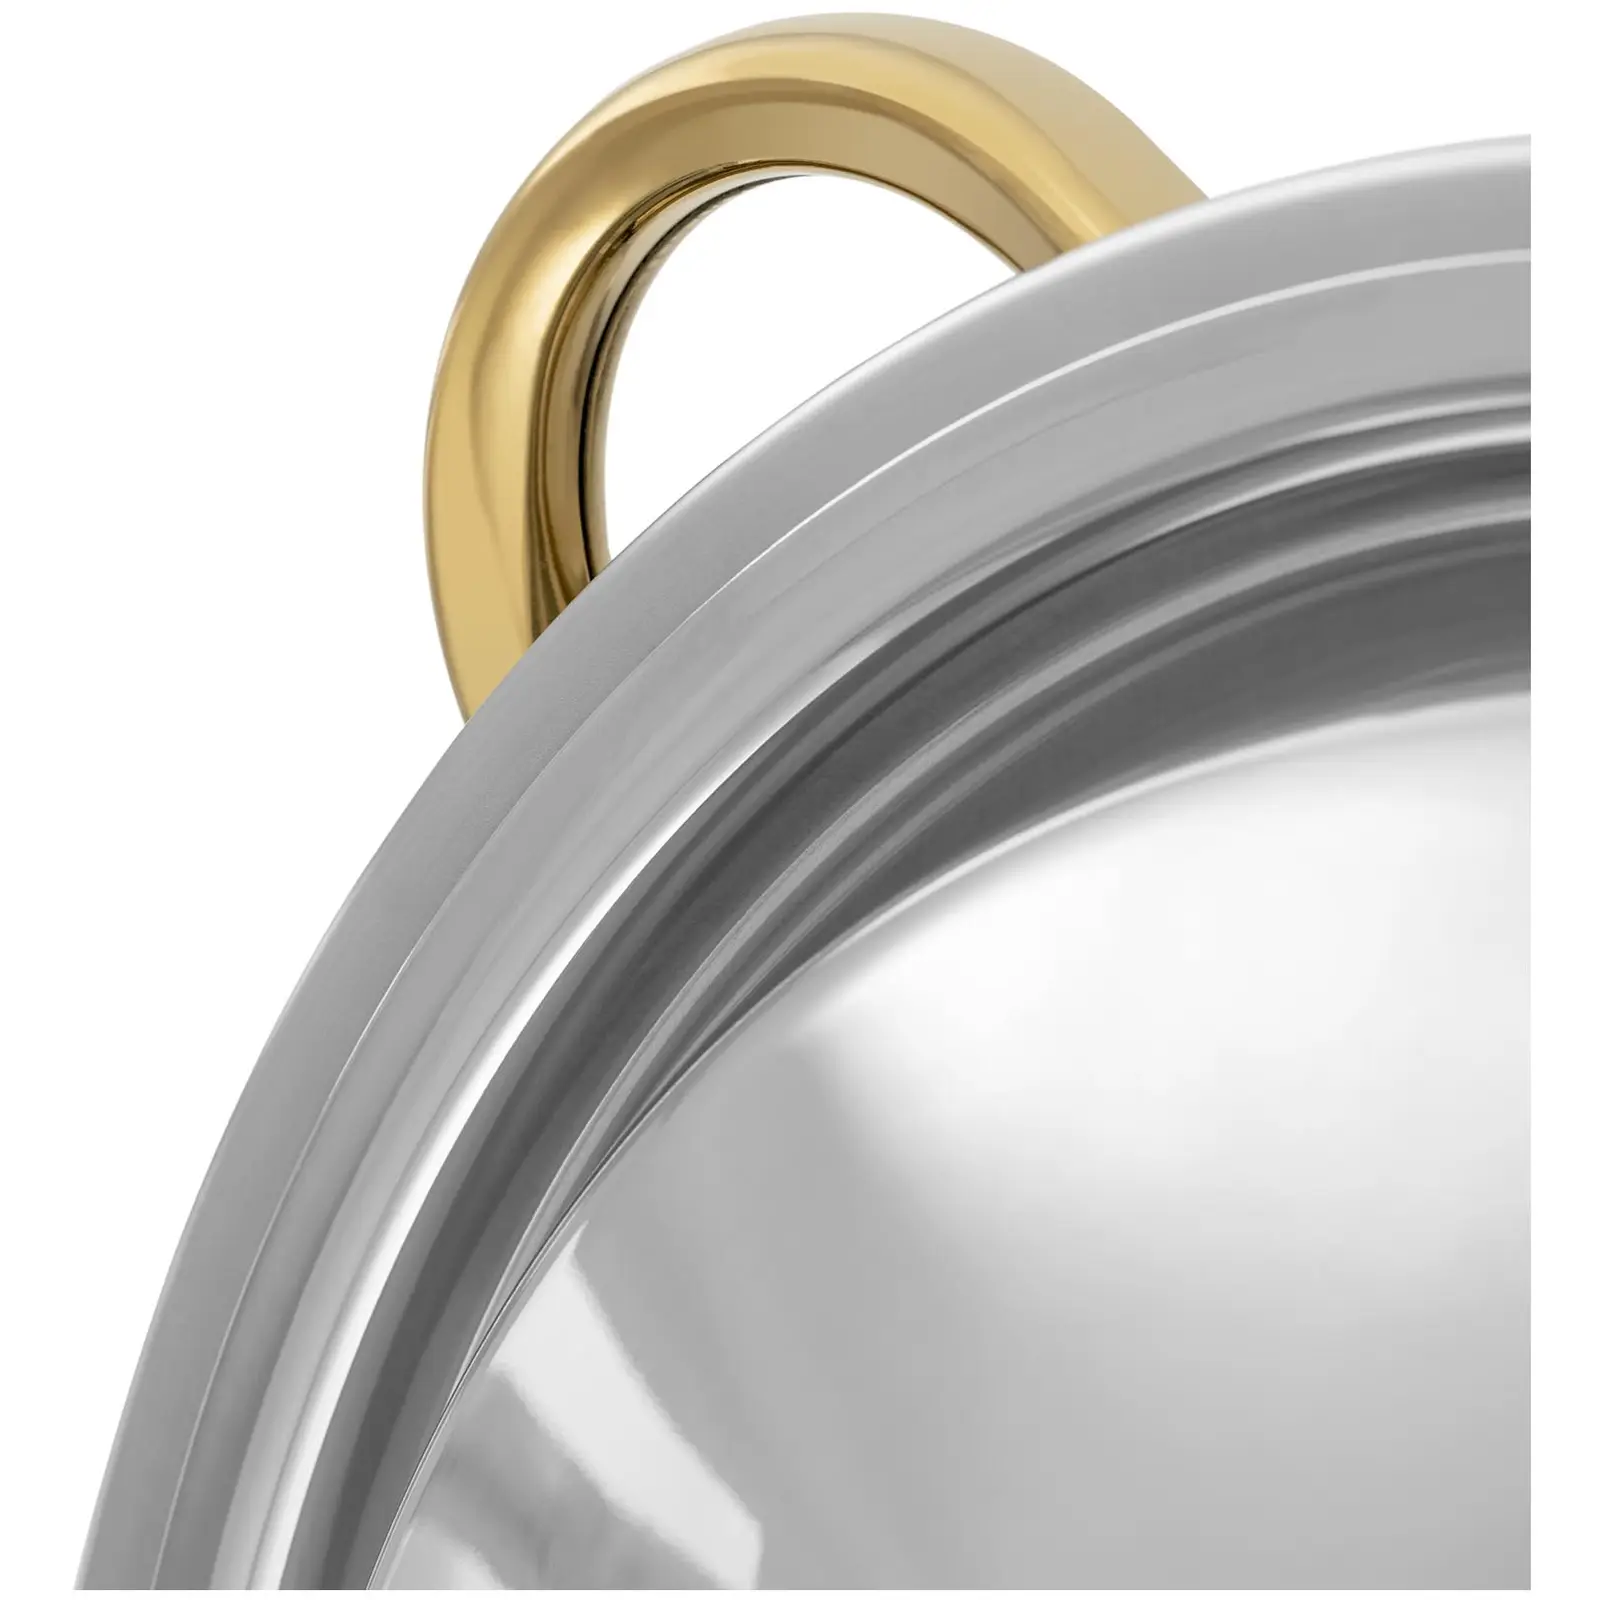 Podgrzewacz do potraw - okrągły - złote akcenty - 4,5 l - 1 pojemnik na paliwo - Royal Catering